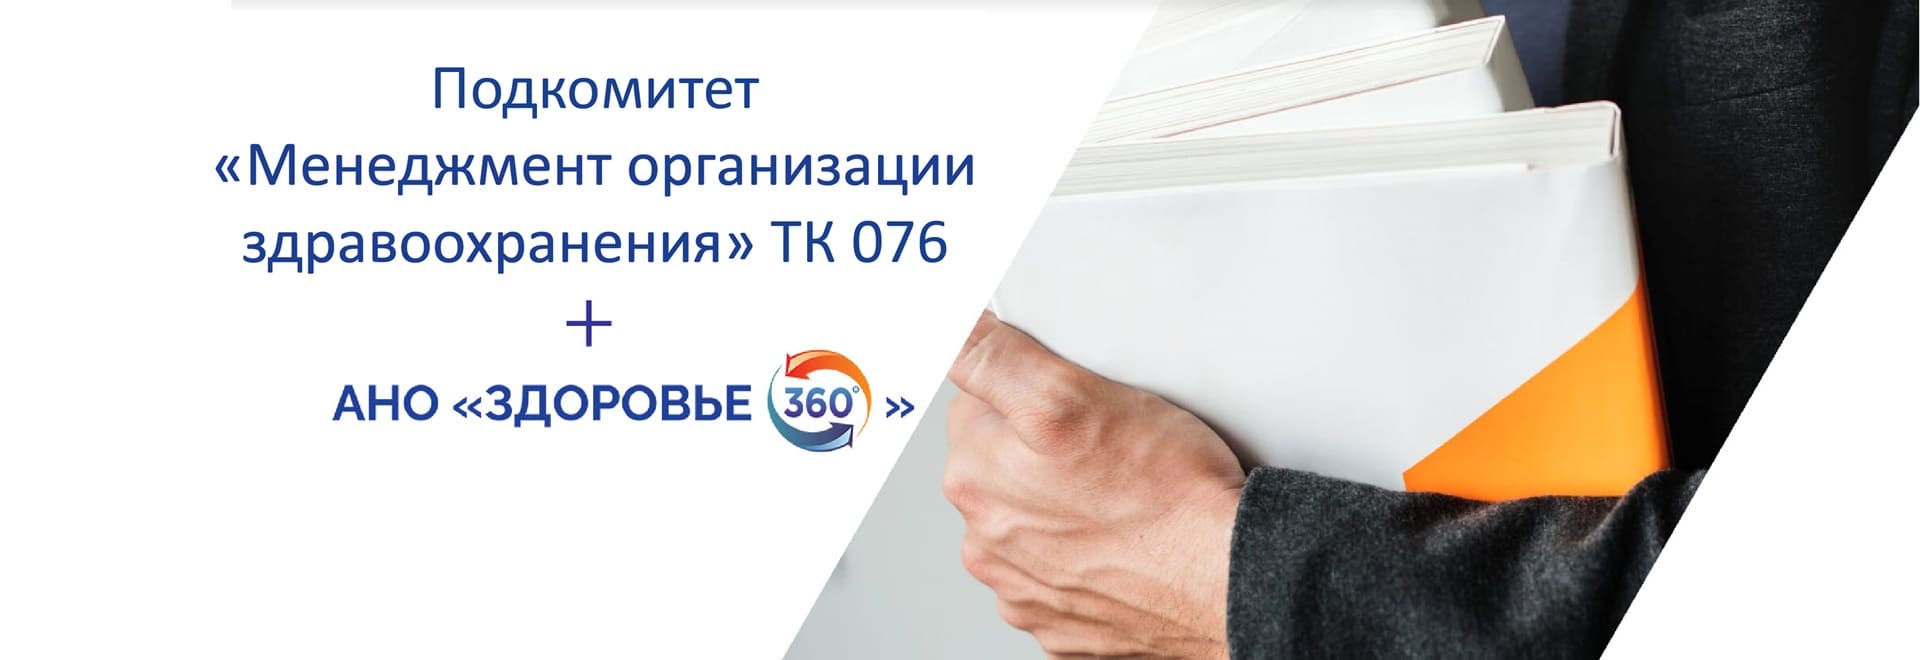 АНО «Здоровье 360» вошло в состав Технического Комитета по стандартизации «Системы менеджмента» (ТК 076)